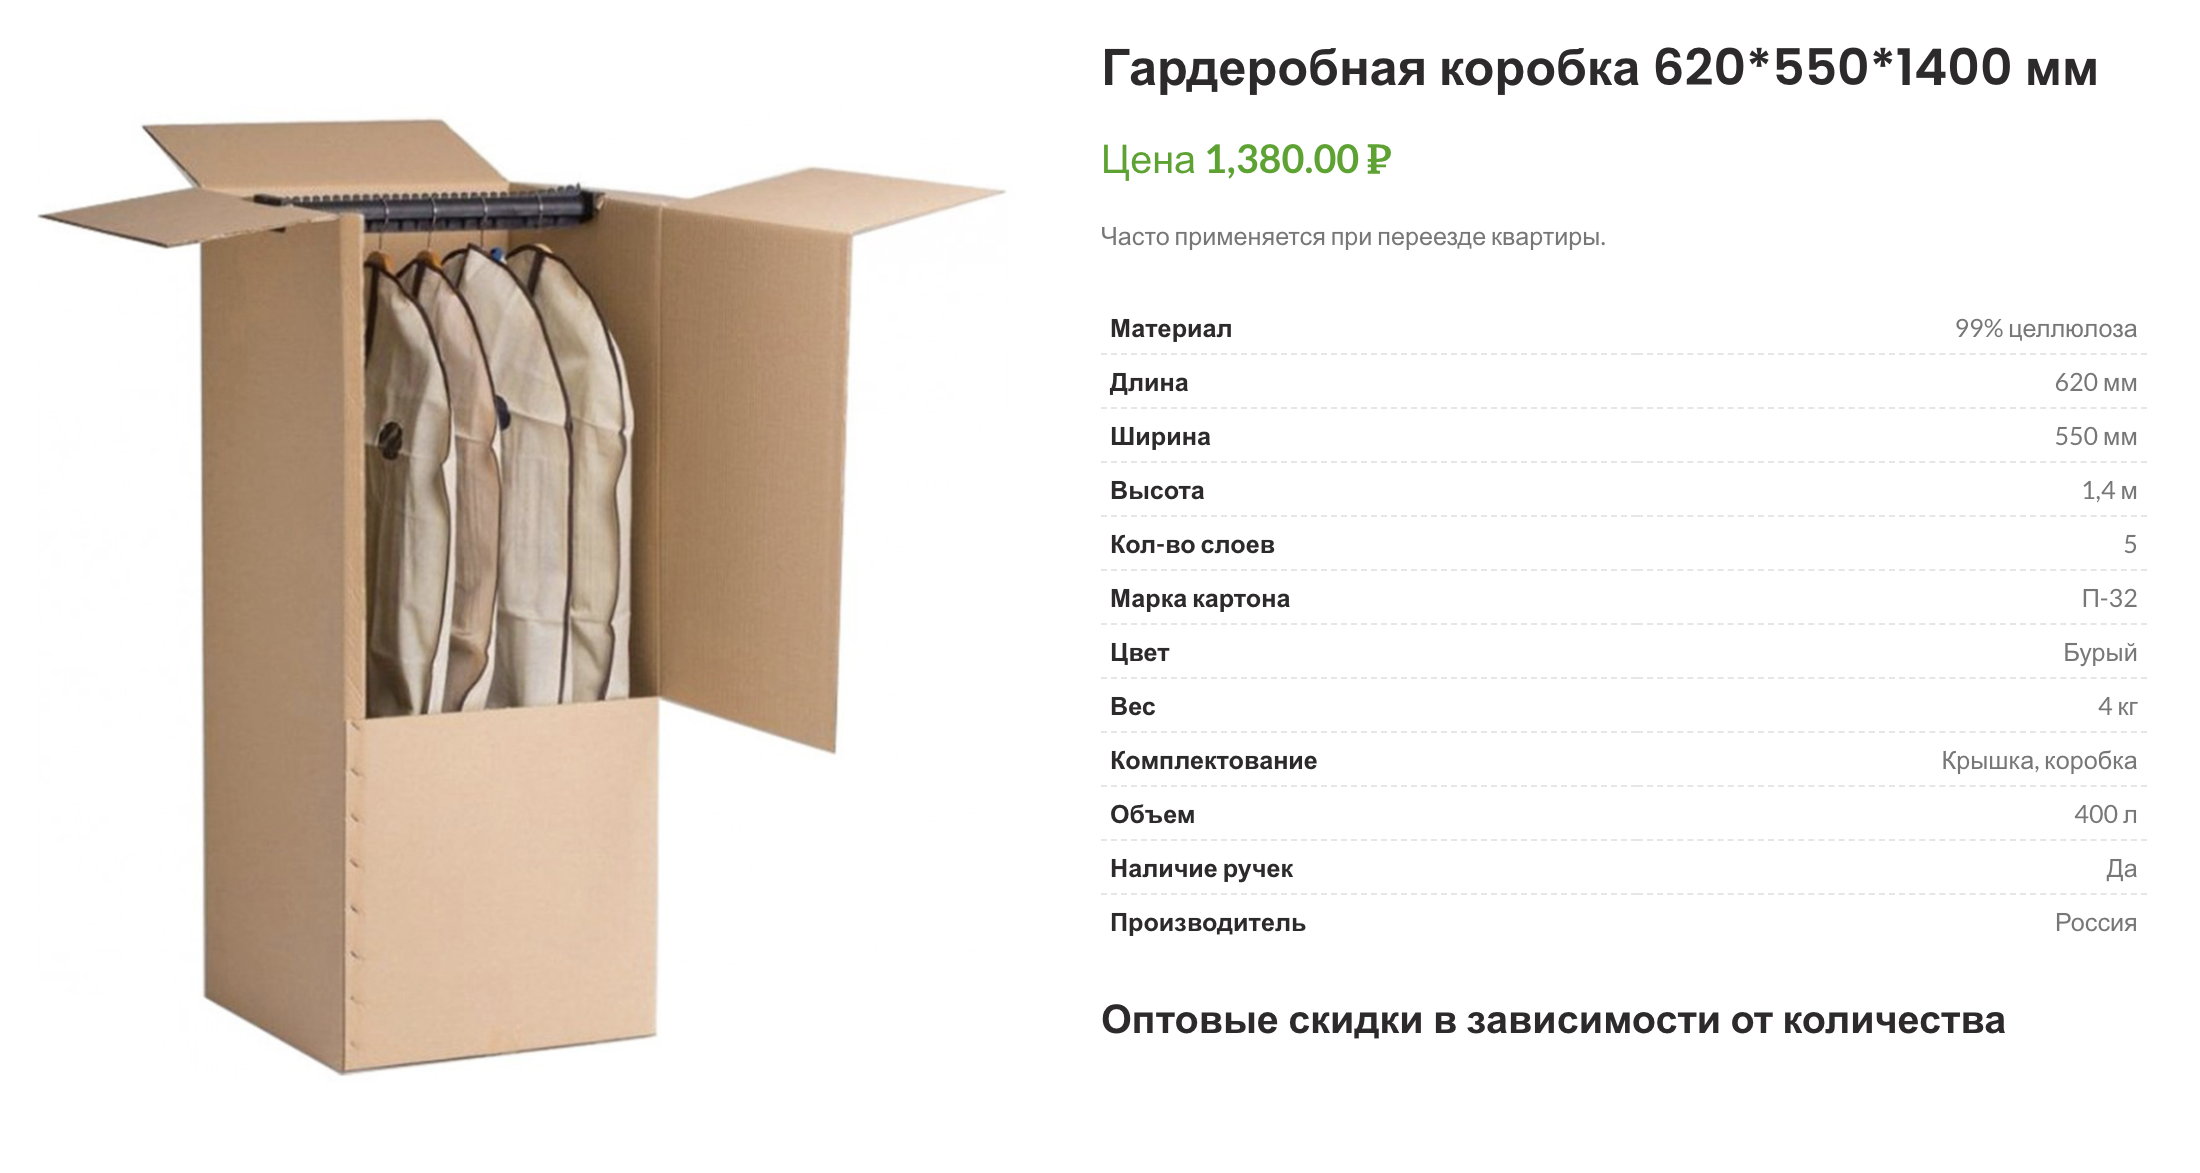 Такие коробки стоят дорого — от 500 рублей и выше, но если в новой квартире нет шкафа, то одна или две пригодятся. Источник: купить-упаковку.рф